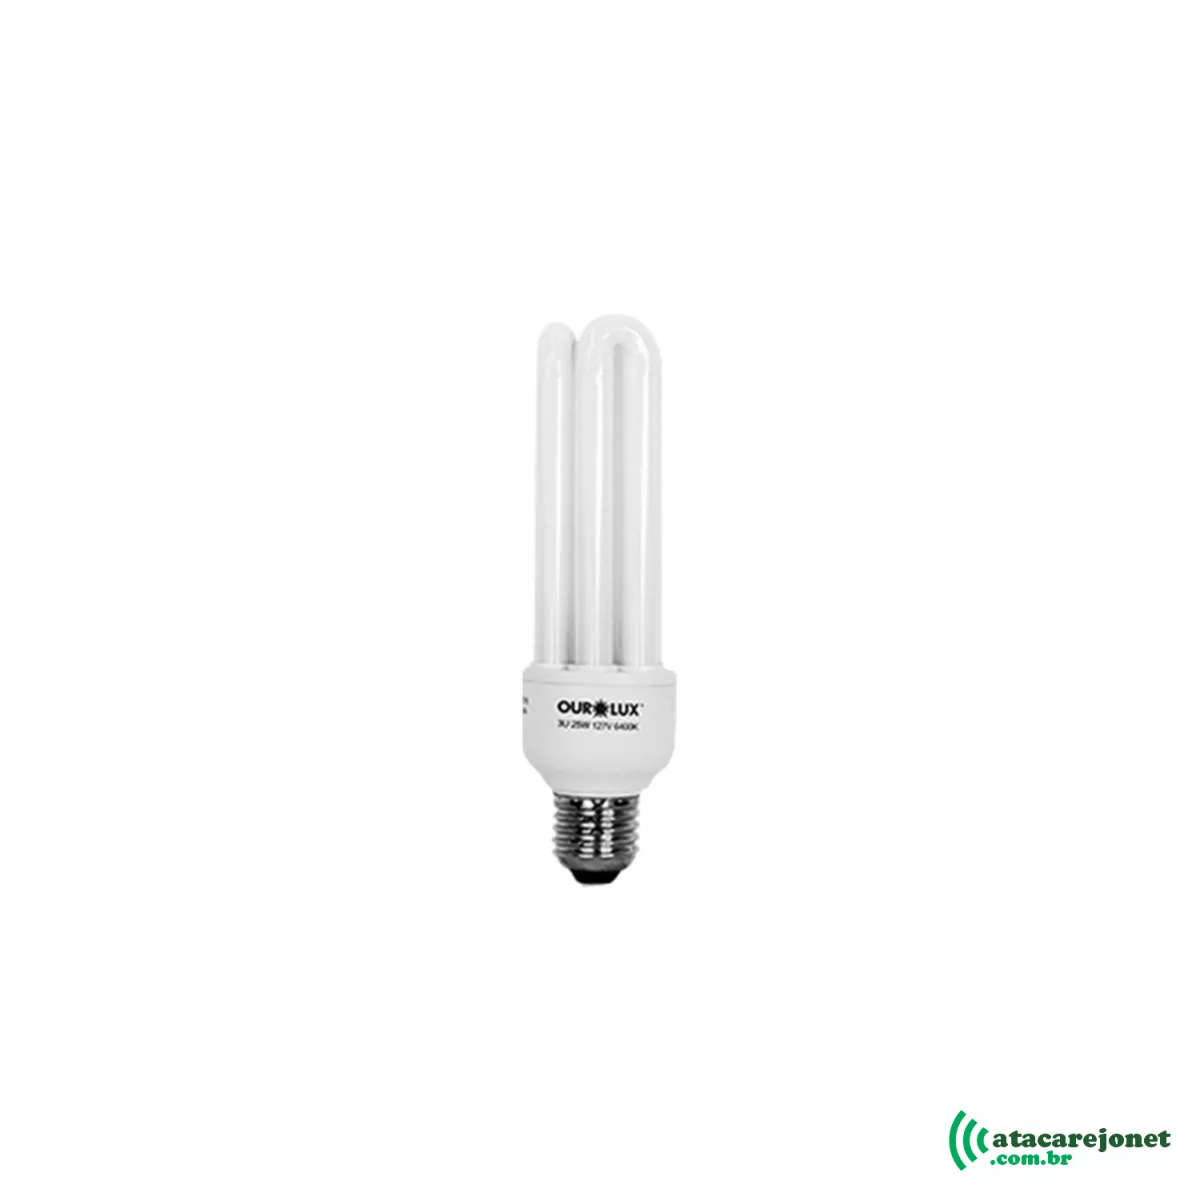 Lâmpada Eletrônica Simples Luz Branca 220V x 30W - Ourolux